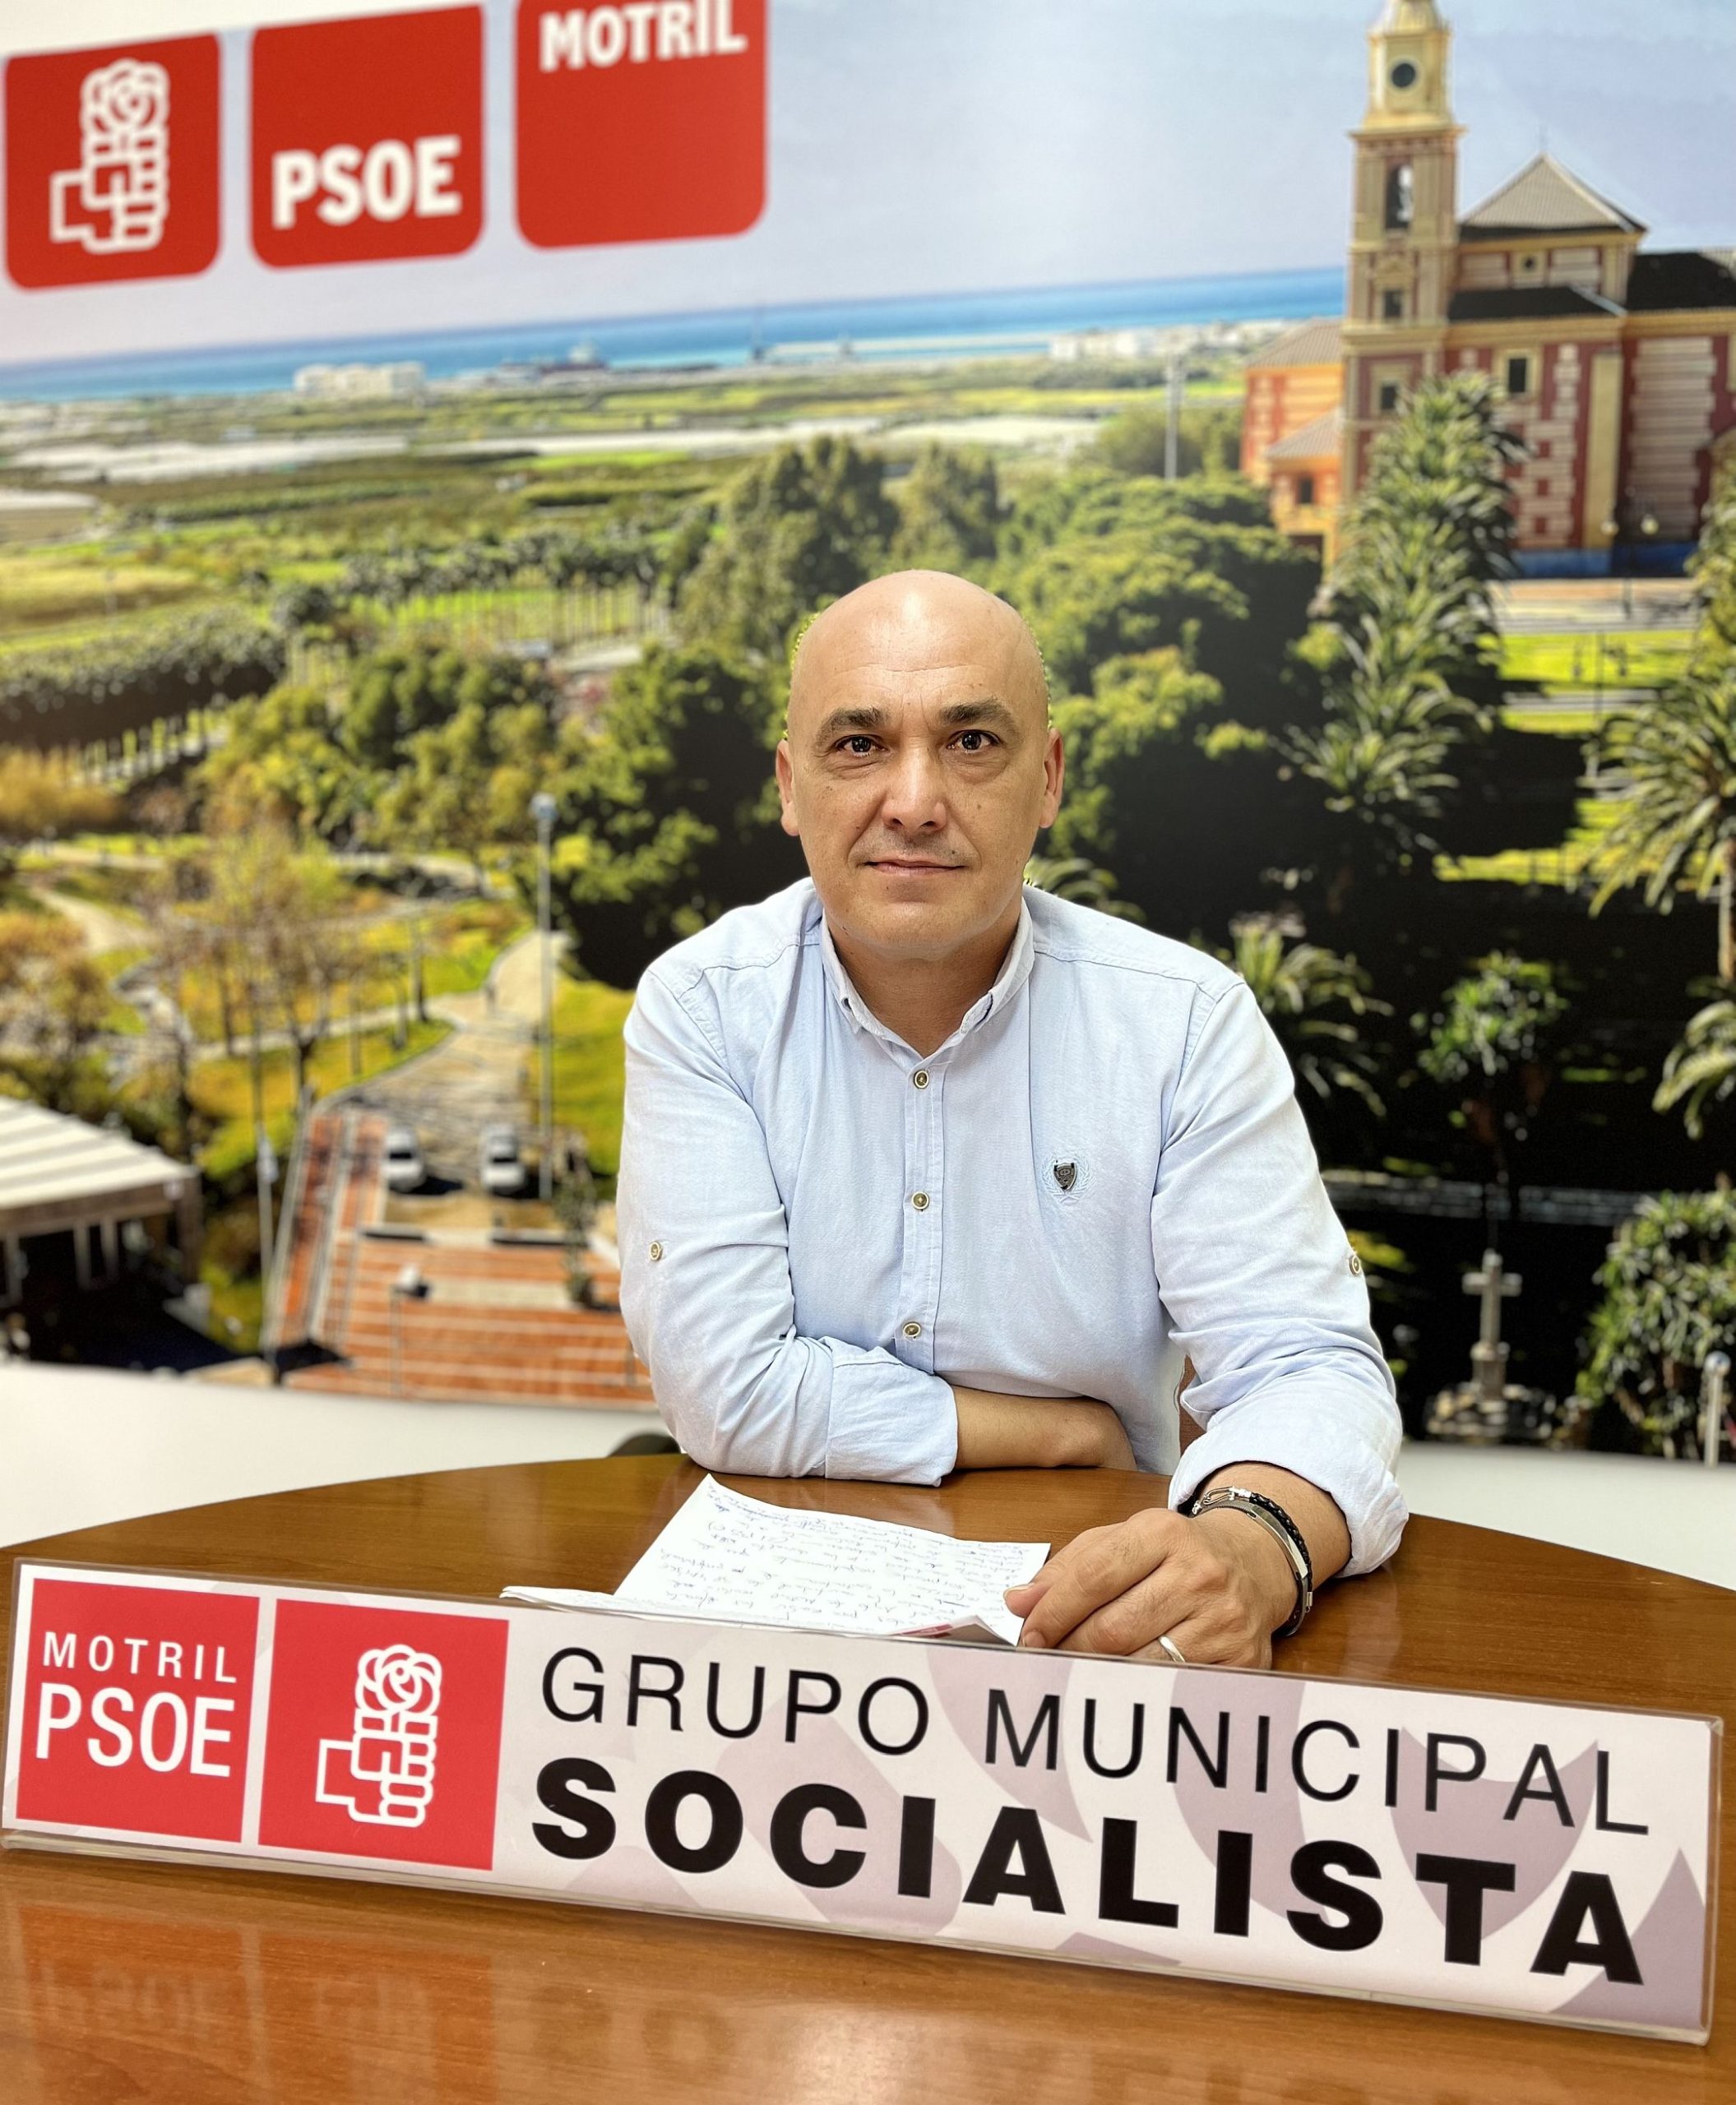 El PSOE denuncia la falta de actividades para jóvenes y familias en Motril